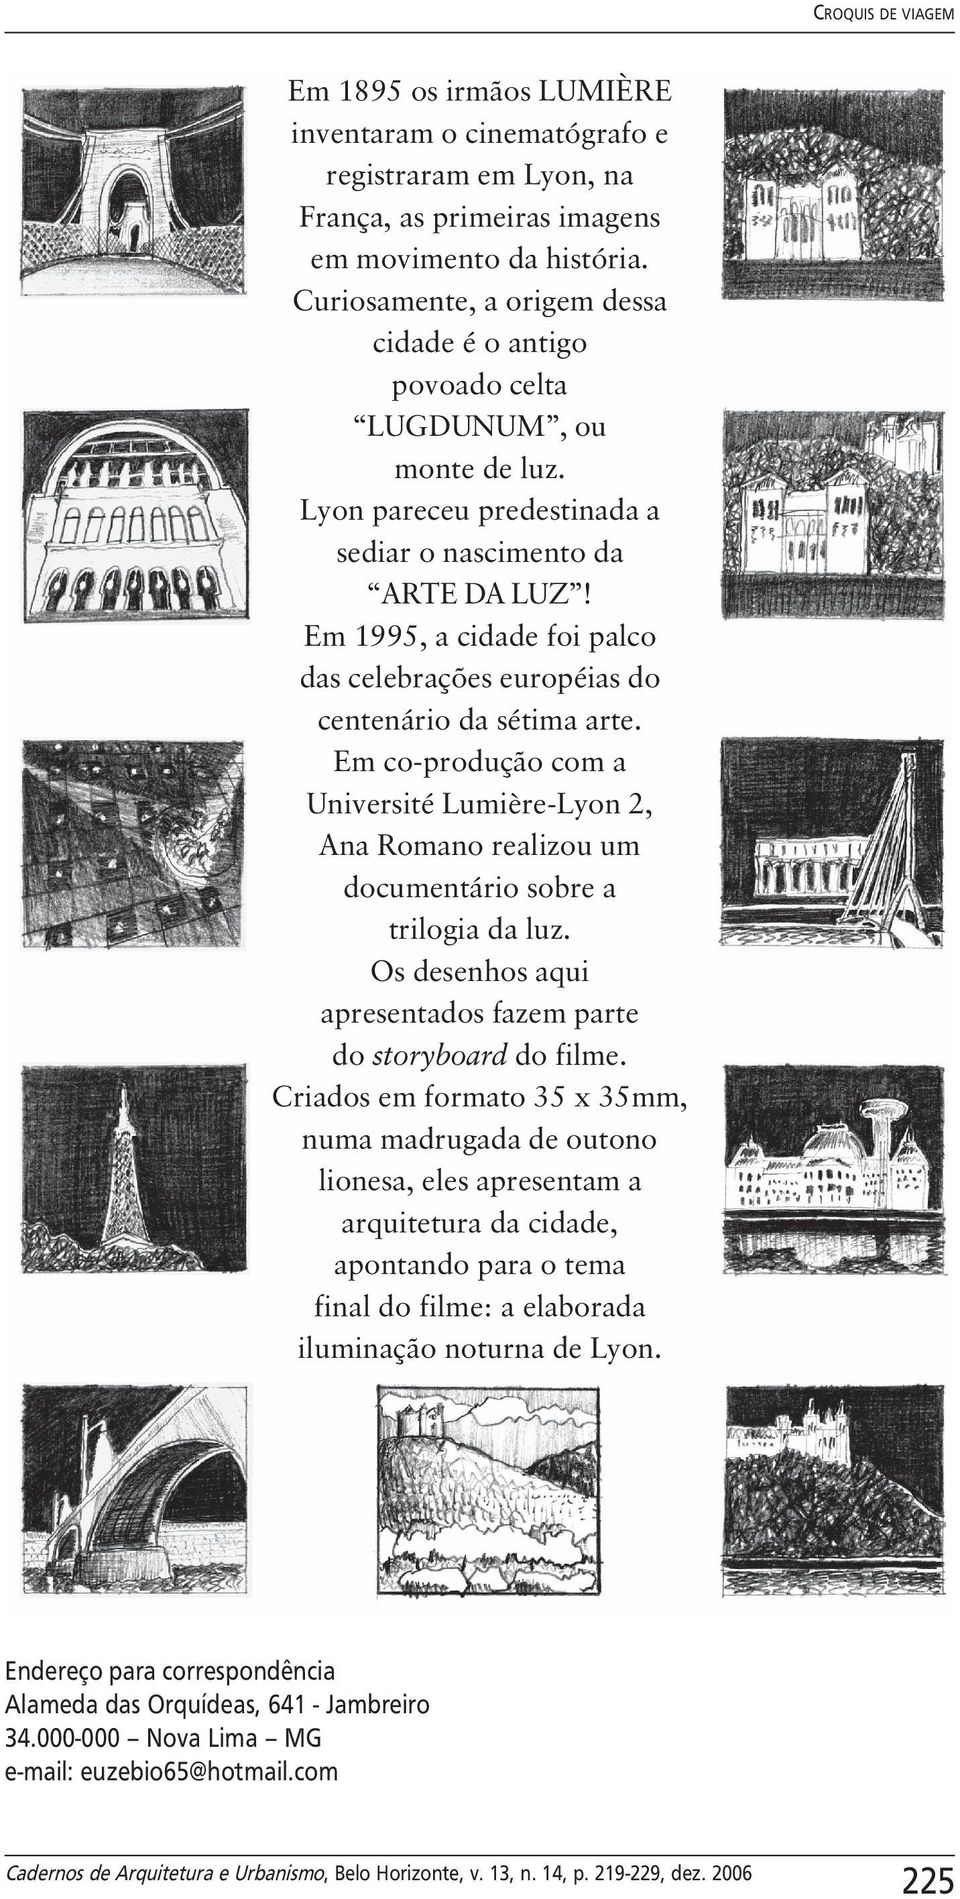 Em 1995, a cidade foi palco das celebrações européias do centenário da sétima arte. Em co-produção com a Université Lumière-Lyon 2, Ana Romano realizou um documentário sobre a trilogia da luz.